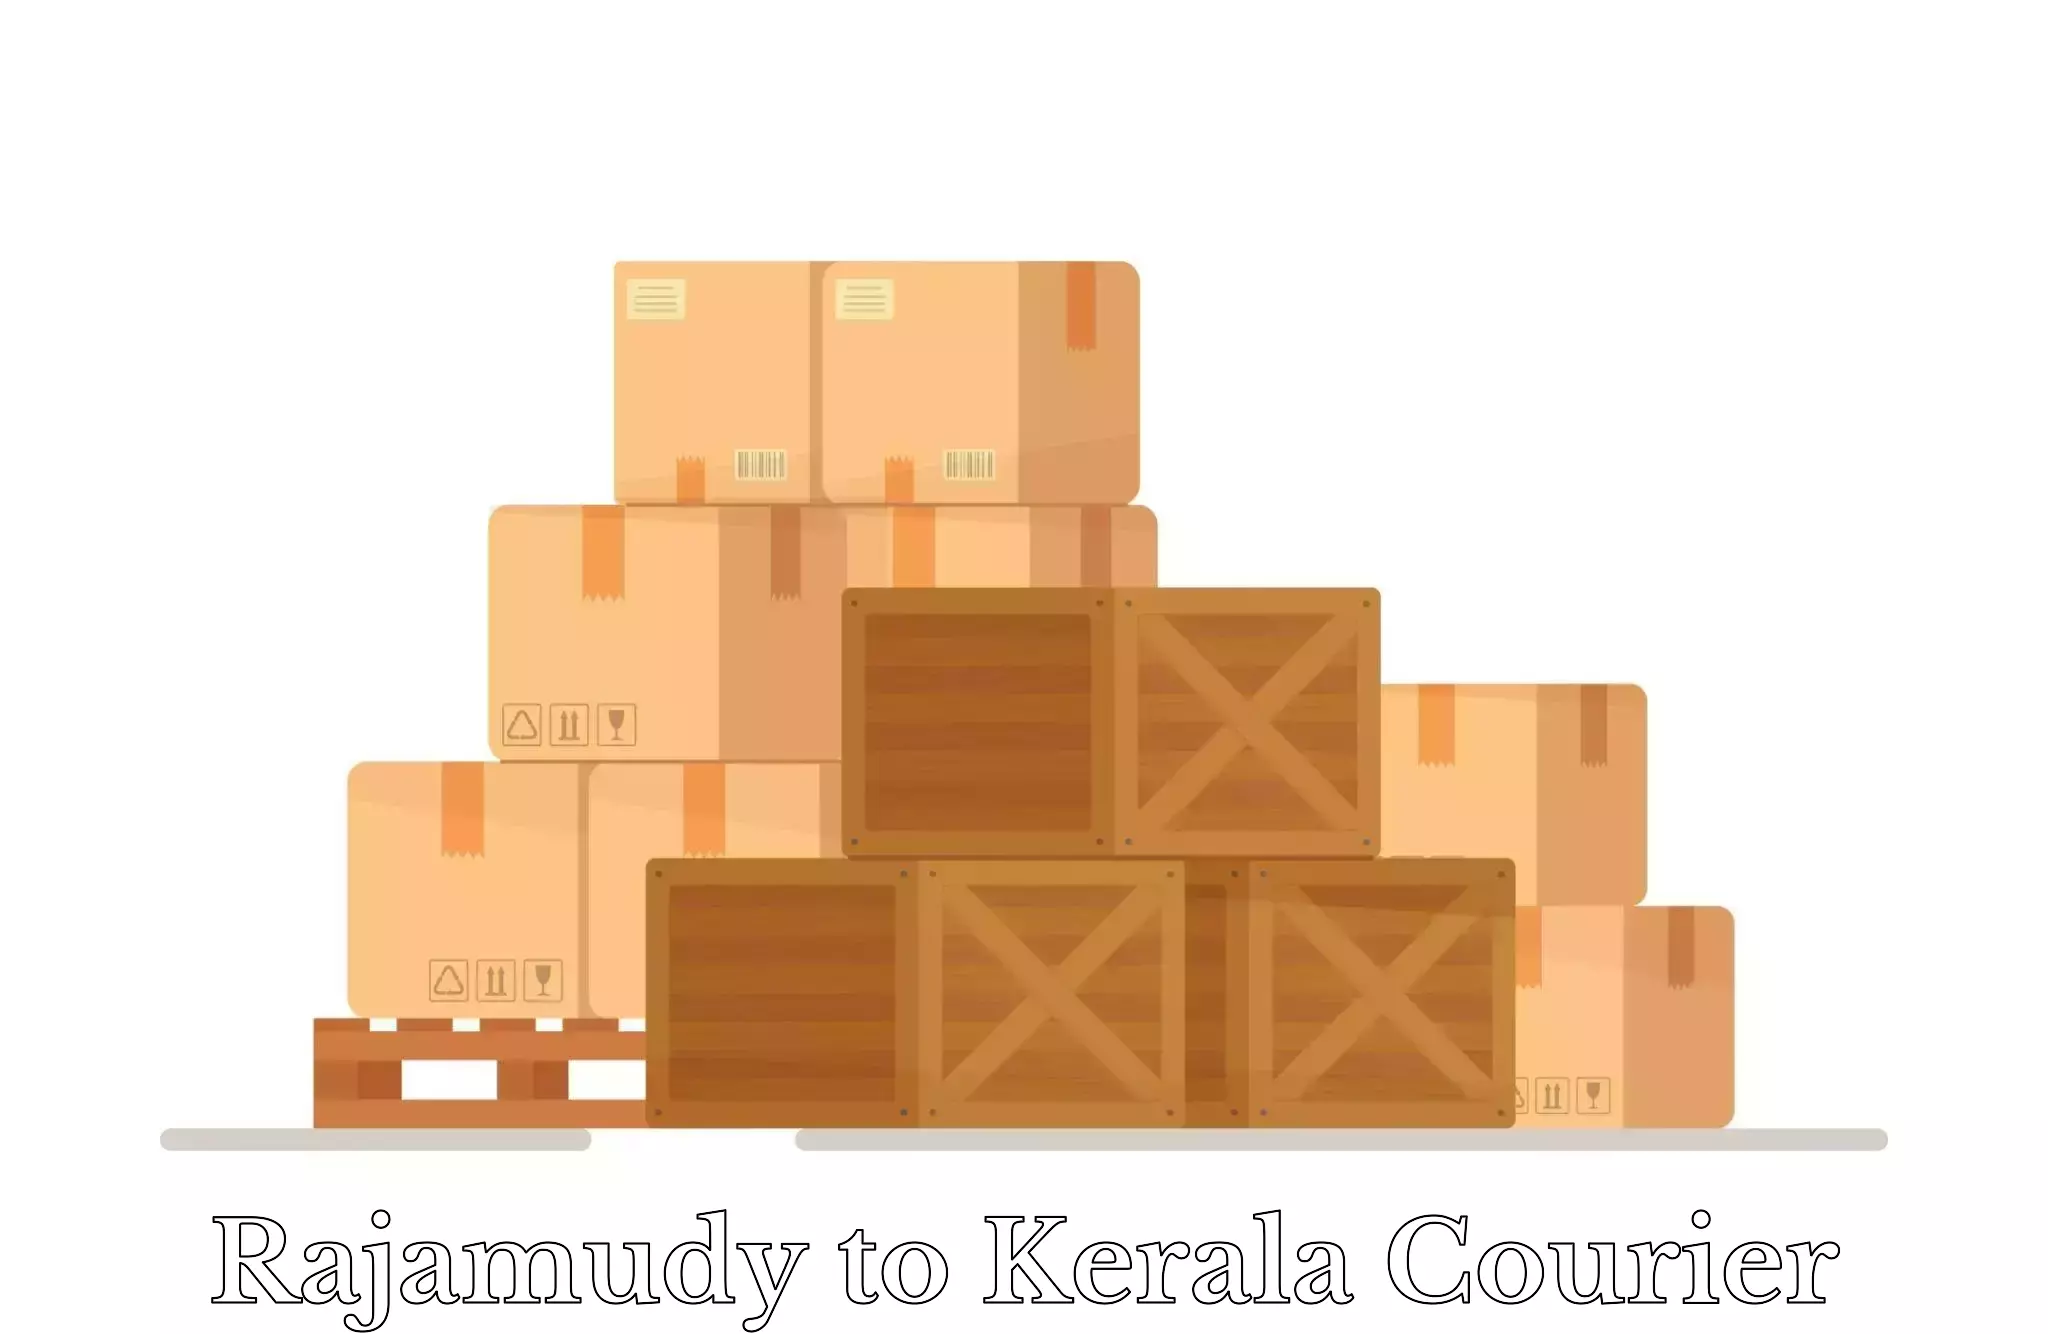 Luggage transport company Rajamudy to Kozhencherry